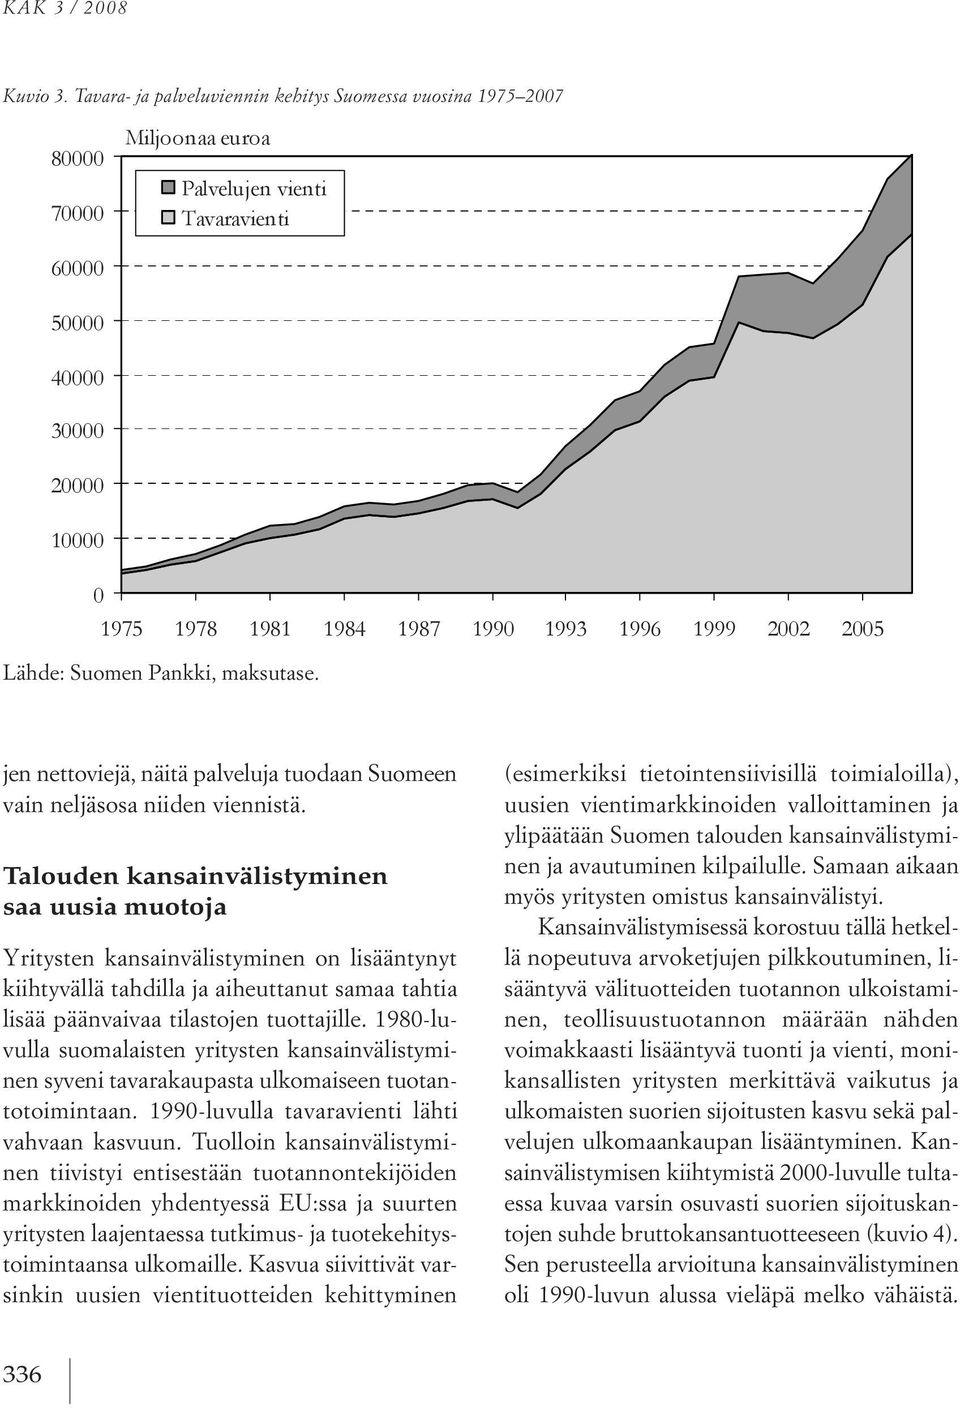 1980 luvulla suomalaisten yritysten kansainvälistyminen syveni tavarakaupasta ulkomaiseen tuotantotoimintaan. 1990 luvulla tavaravienti lähti vahvaan kasvuun.